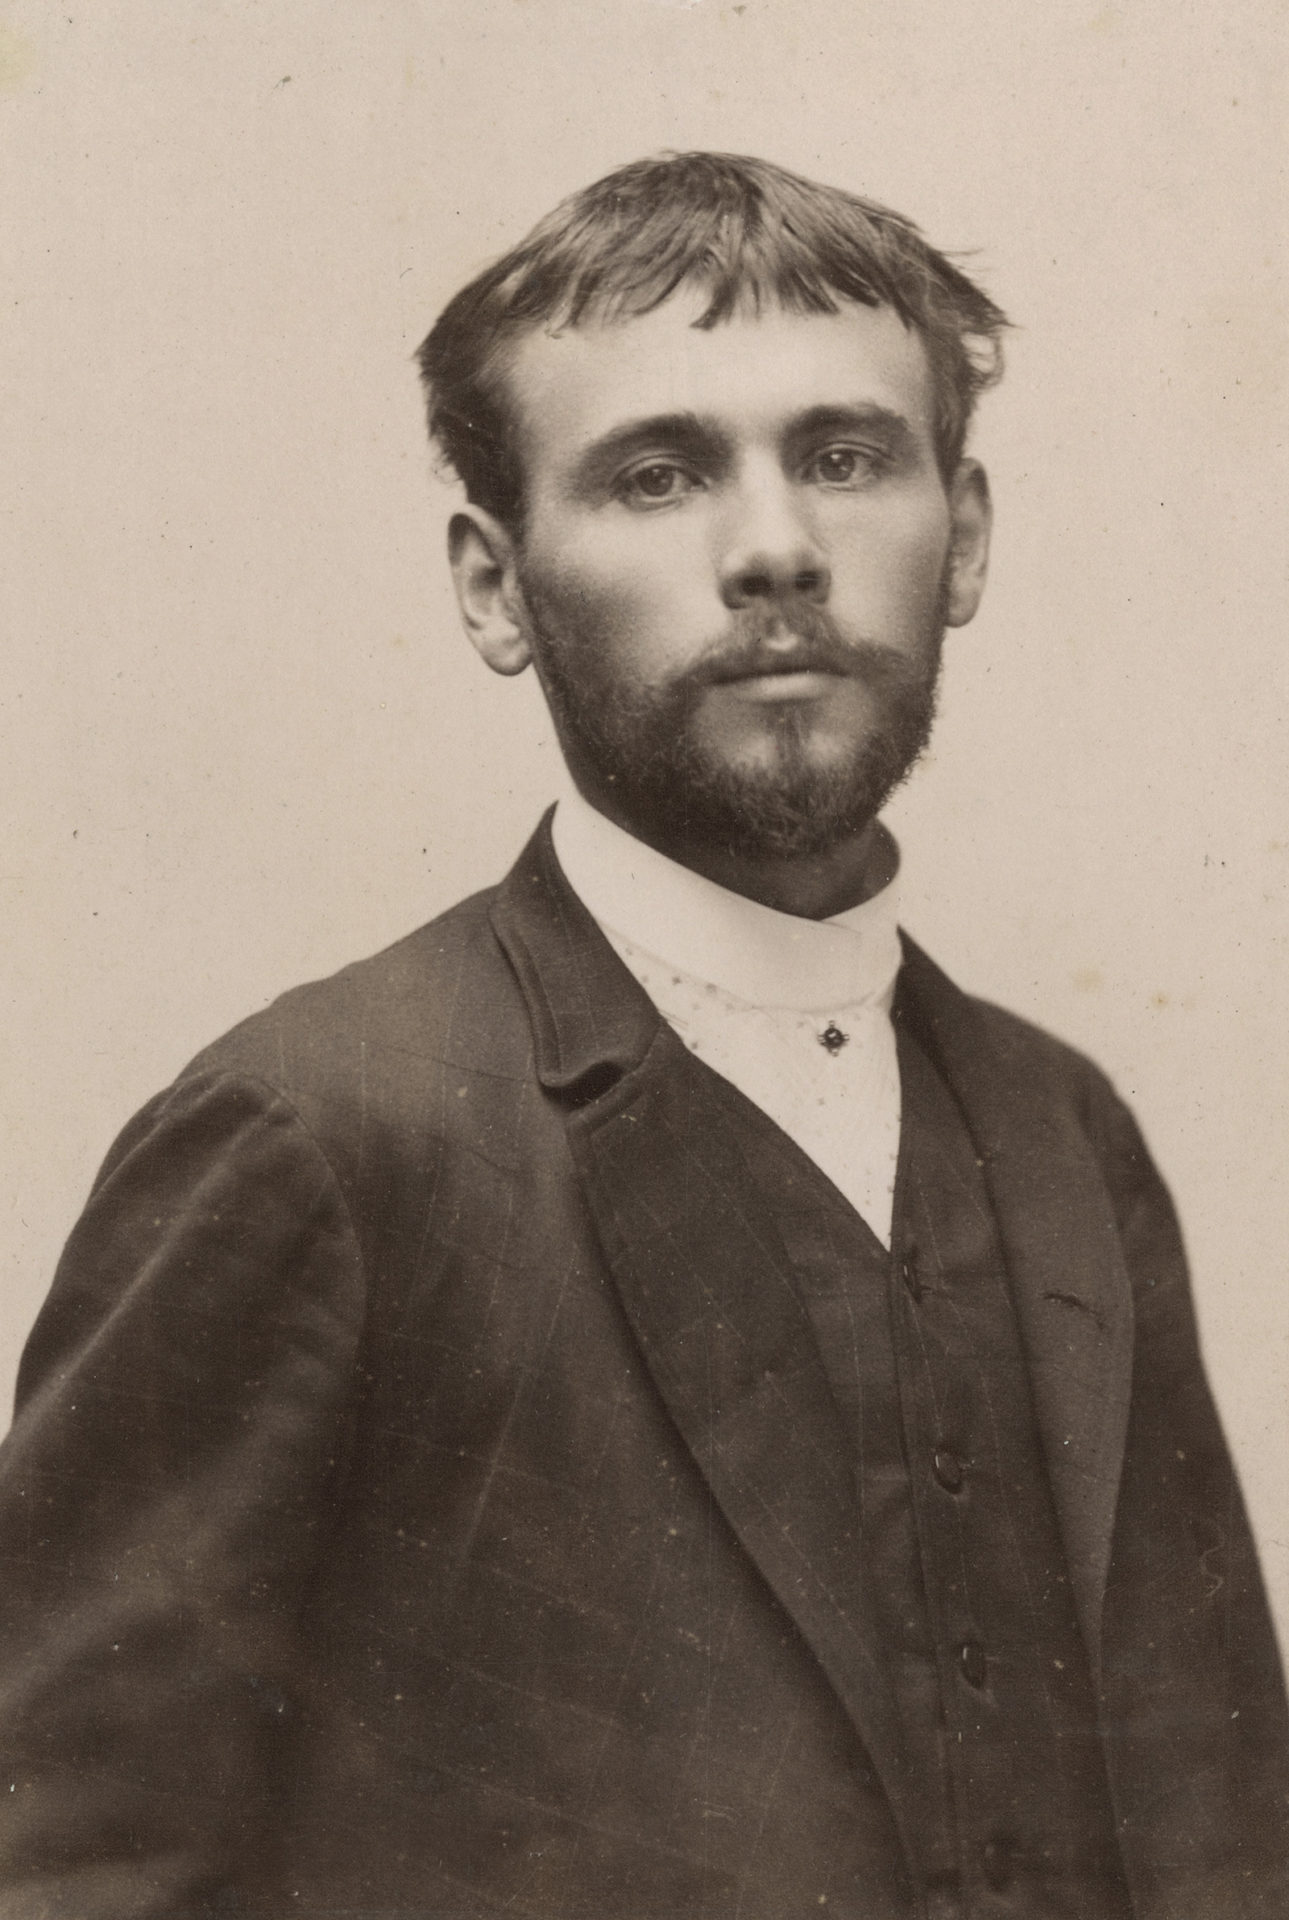 Which photograph shows Gustav Klimt?